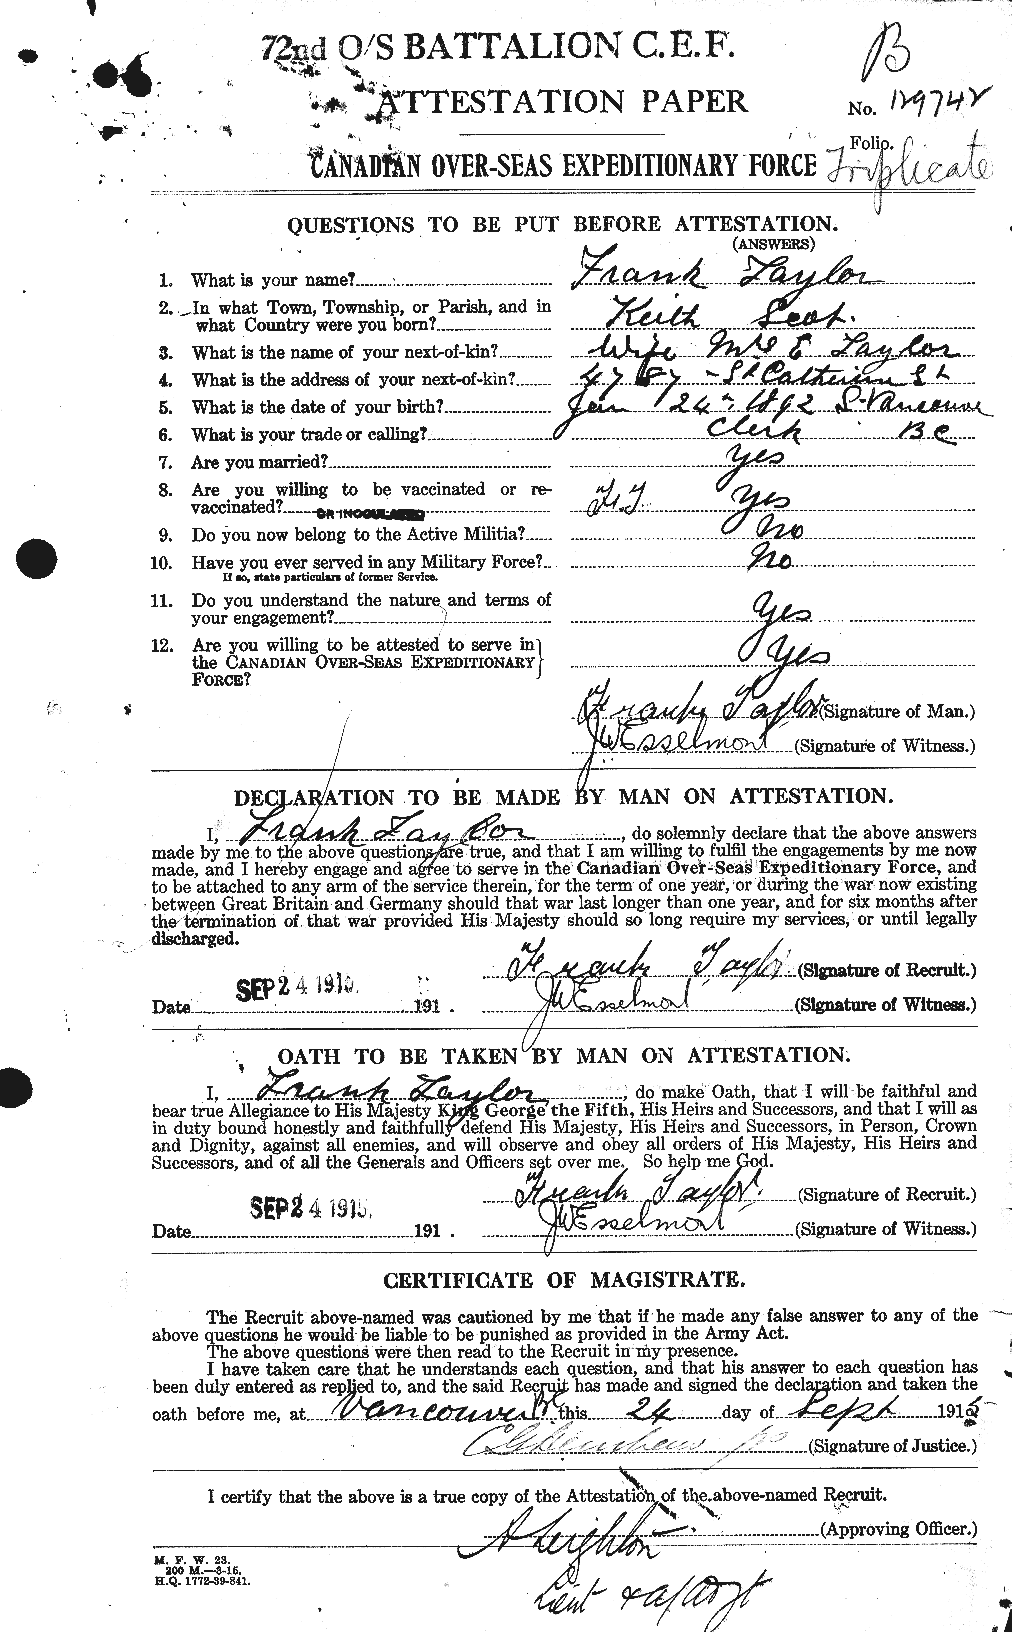 Dossiers du Personnel de la Première Guerre mondiale - CEC 625700a